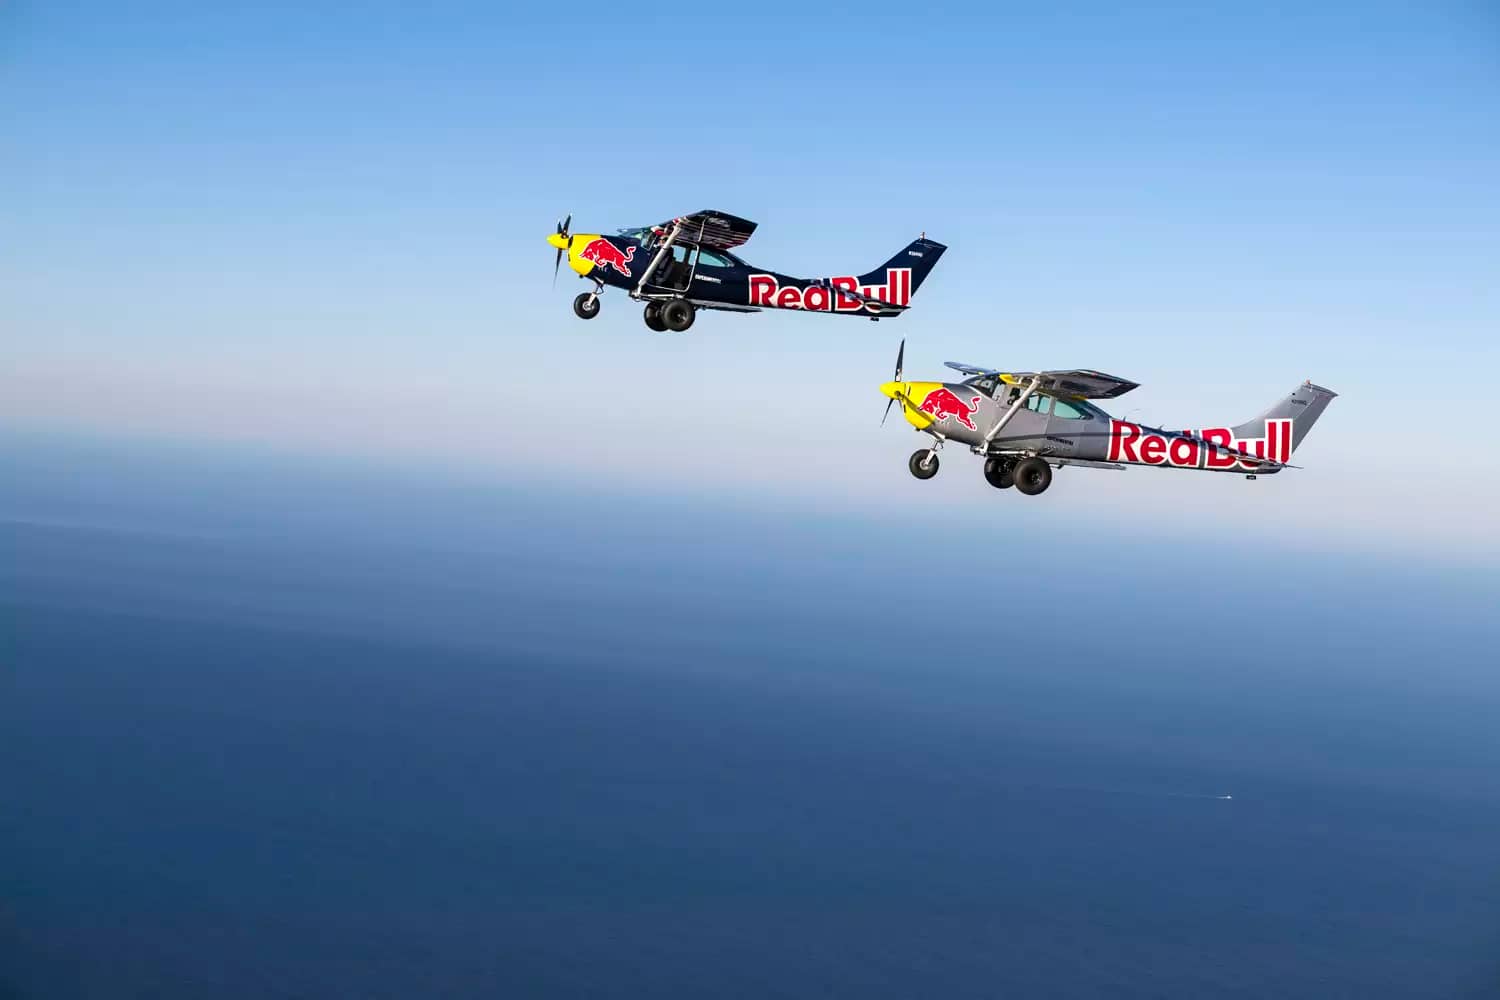 Foto dos dois aviões personalizados voando com a logo e brasão da marca Red Bull. Um avião é azul e o outro prateado, cores símbolo da companhia de energéticos.